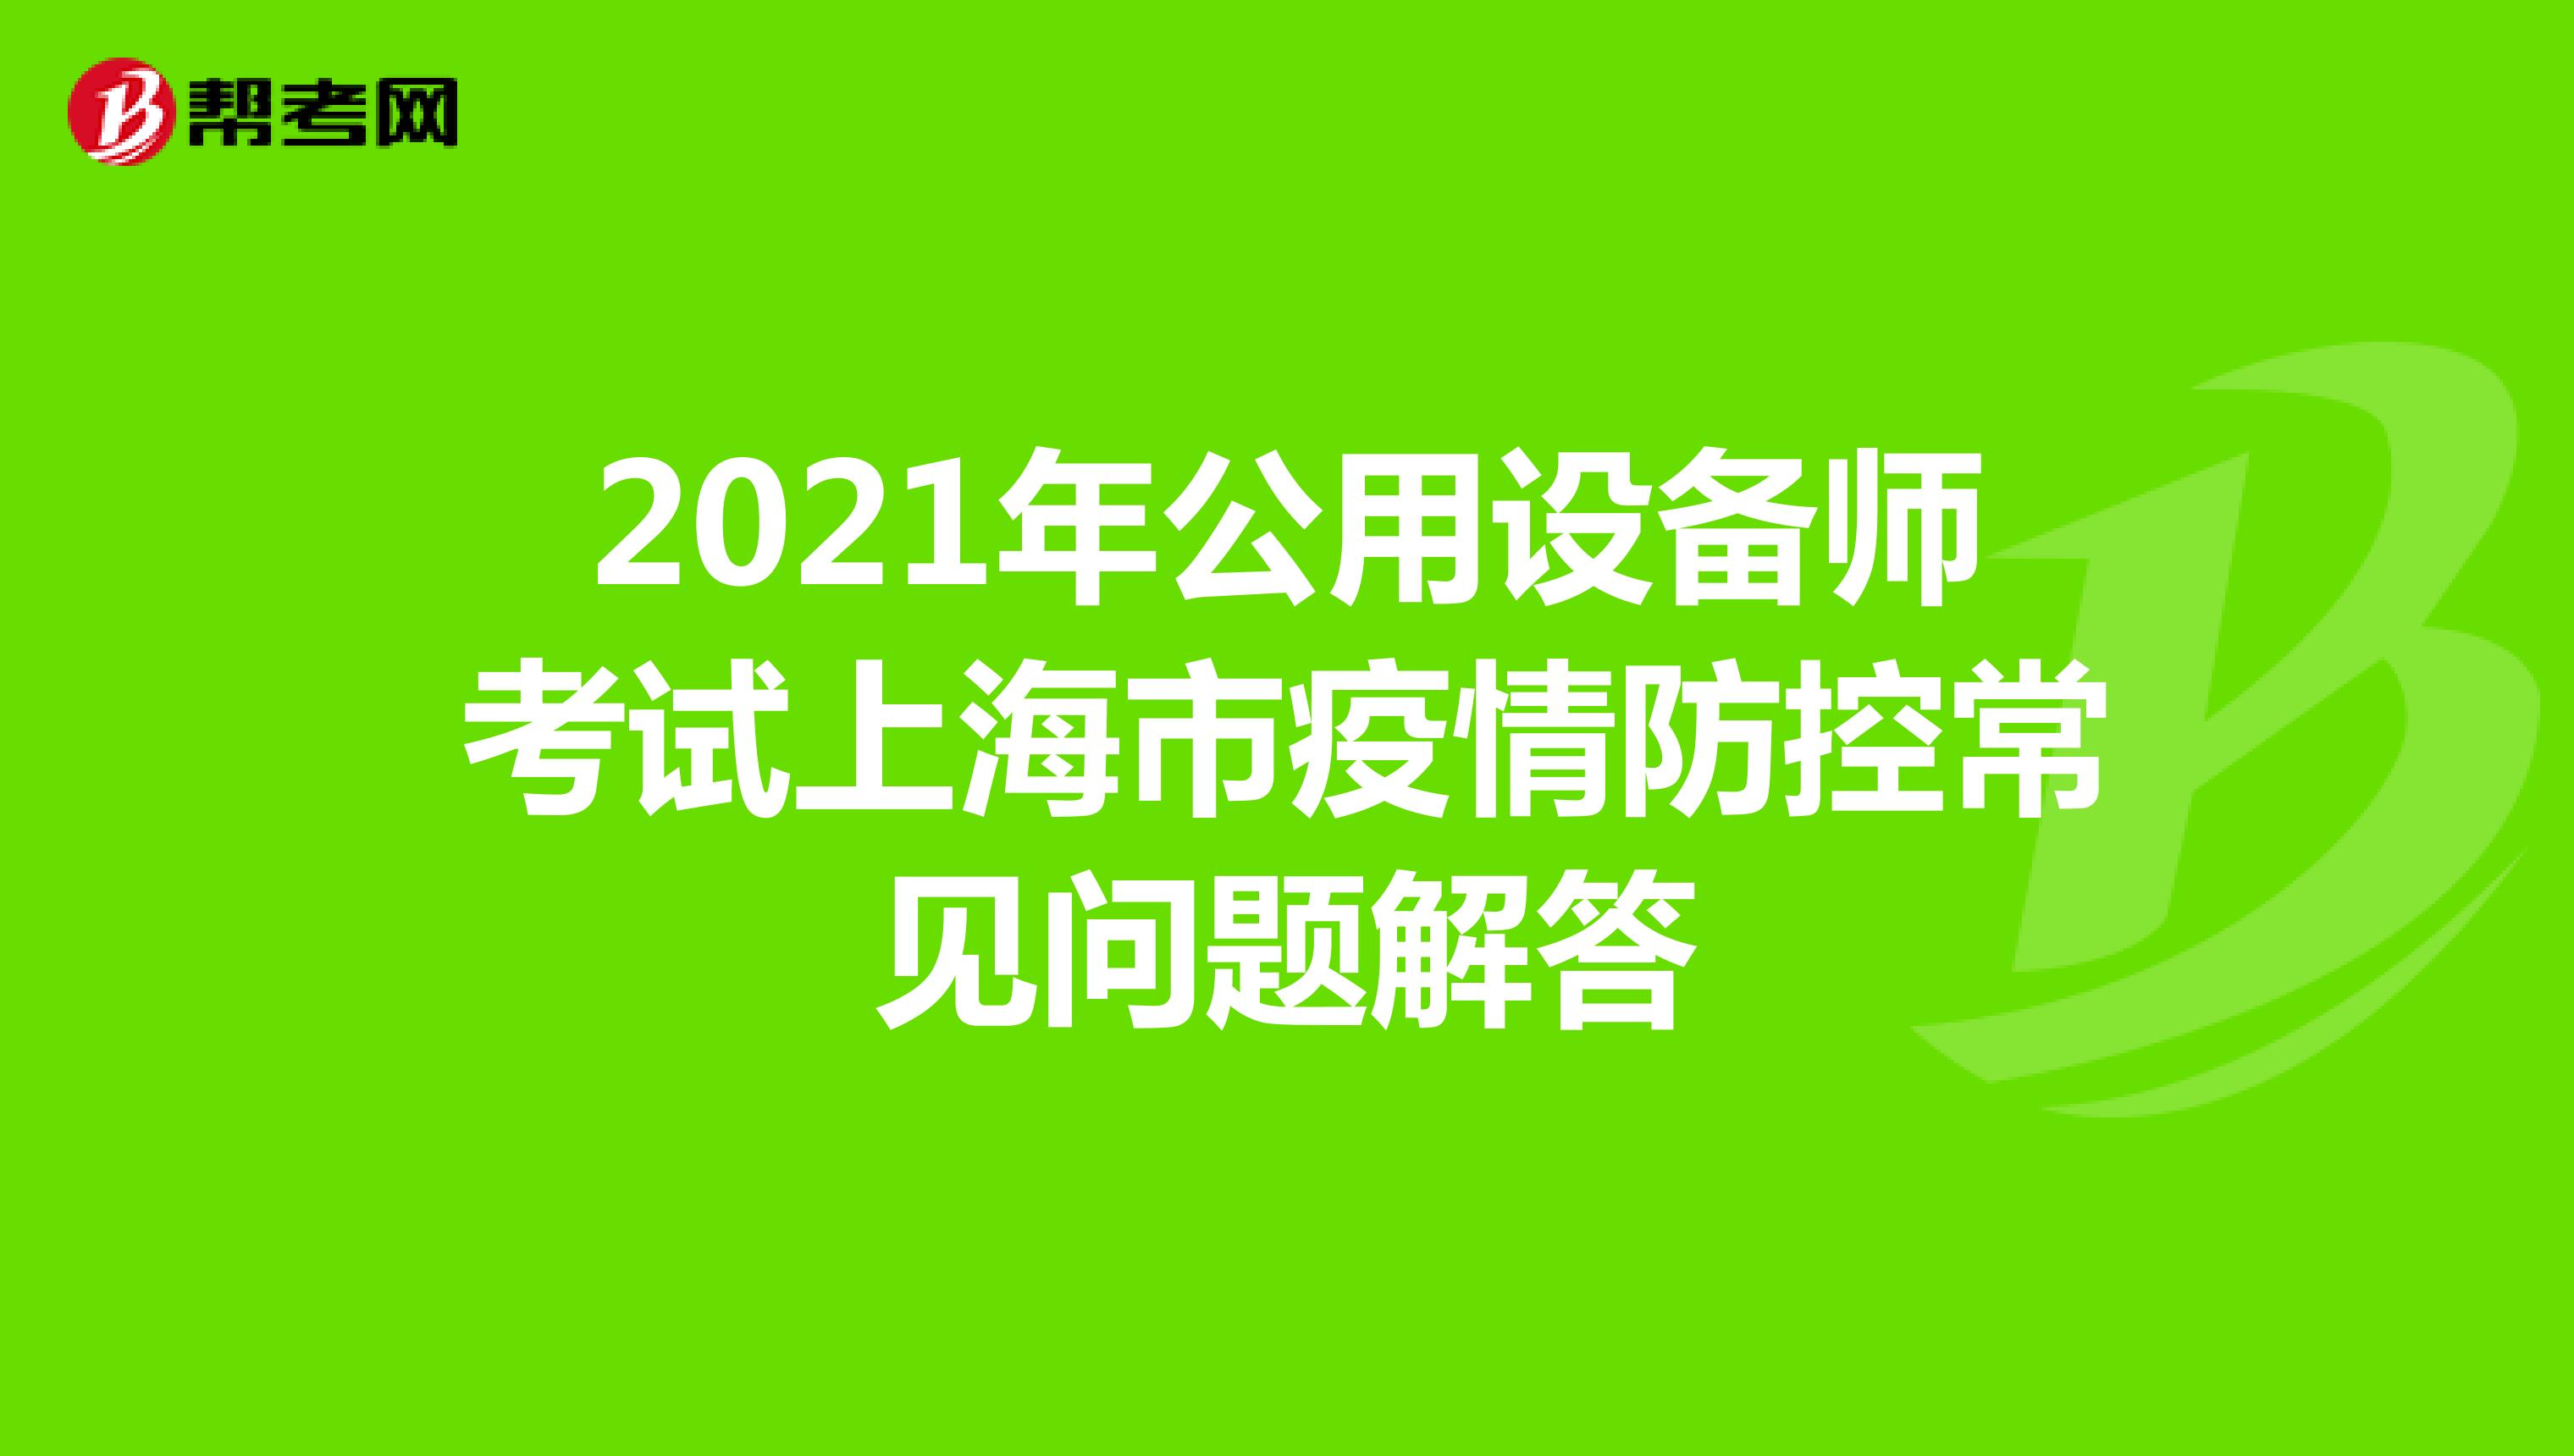 2021年公用设备师考试上海市疫情防控常见问题解答